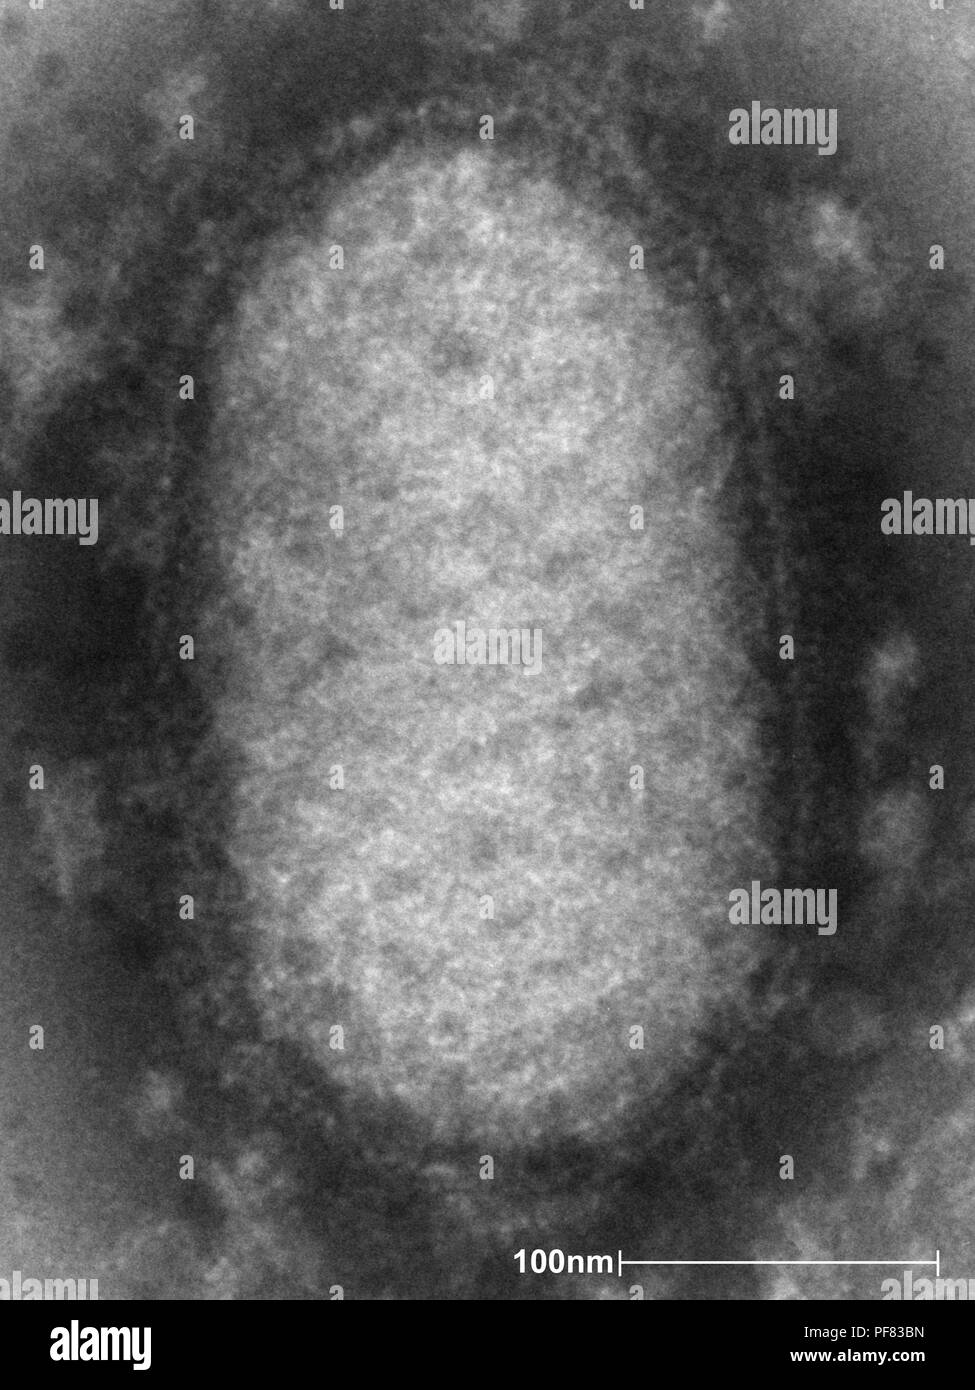 Dettagli ultrastrutturali di una ORF virus ha rivelato negativo e colorate trasmissione microscopiche di elettroni (TEM) immagine, 2004. Immagine cortesia di centri per il controllo delle malattie (CDC) / Dr A. Likos. () Foto Stock